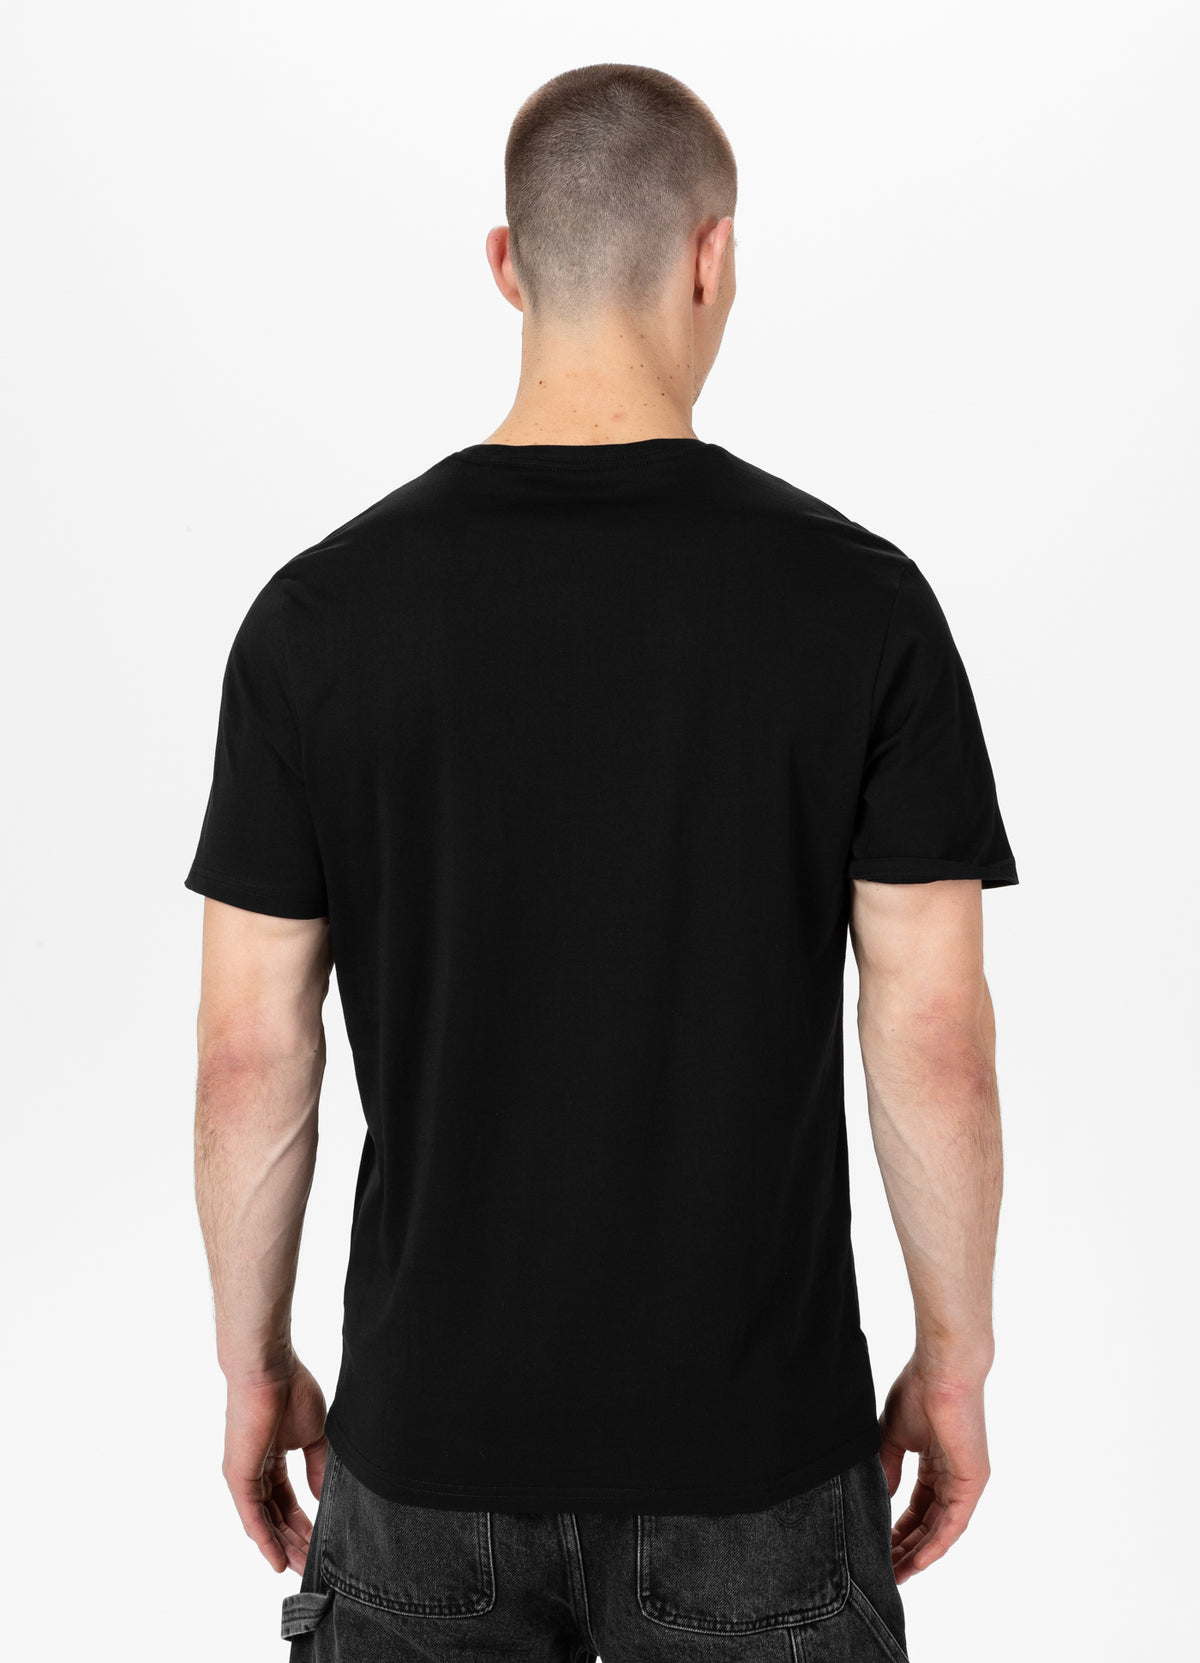 SMALL LOGO Lightweight Black T-shirt - Pitbullstore.eu